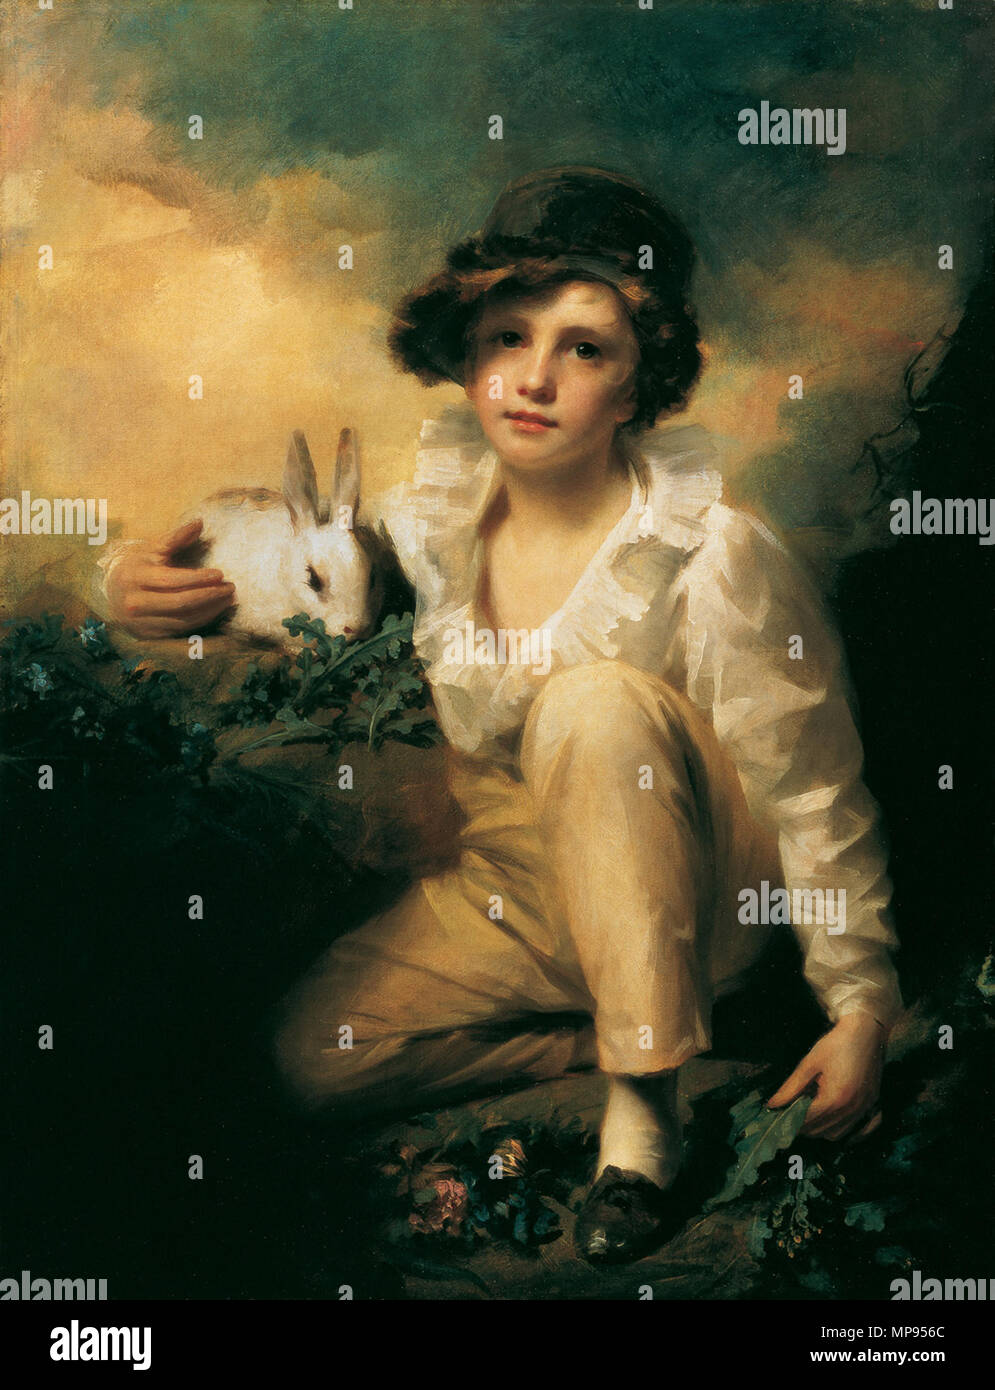 DUMONT ART 22 S40 Englisch: Junge und Kaninchen 1814. 1037 Raeburn, Henry - Junge und Kaninchen - 1814 Stockfoto